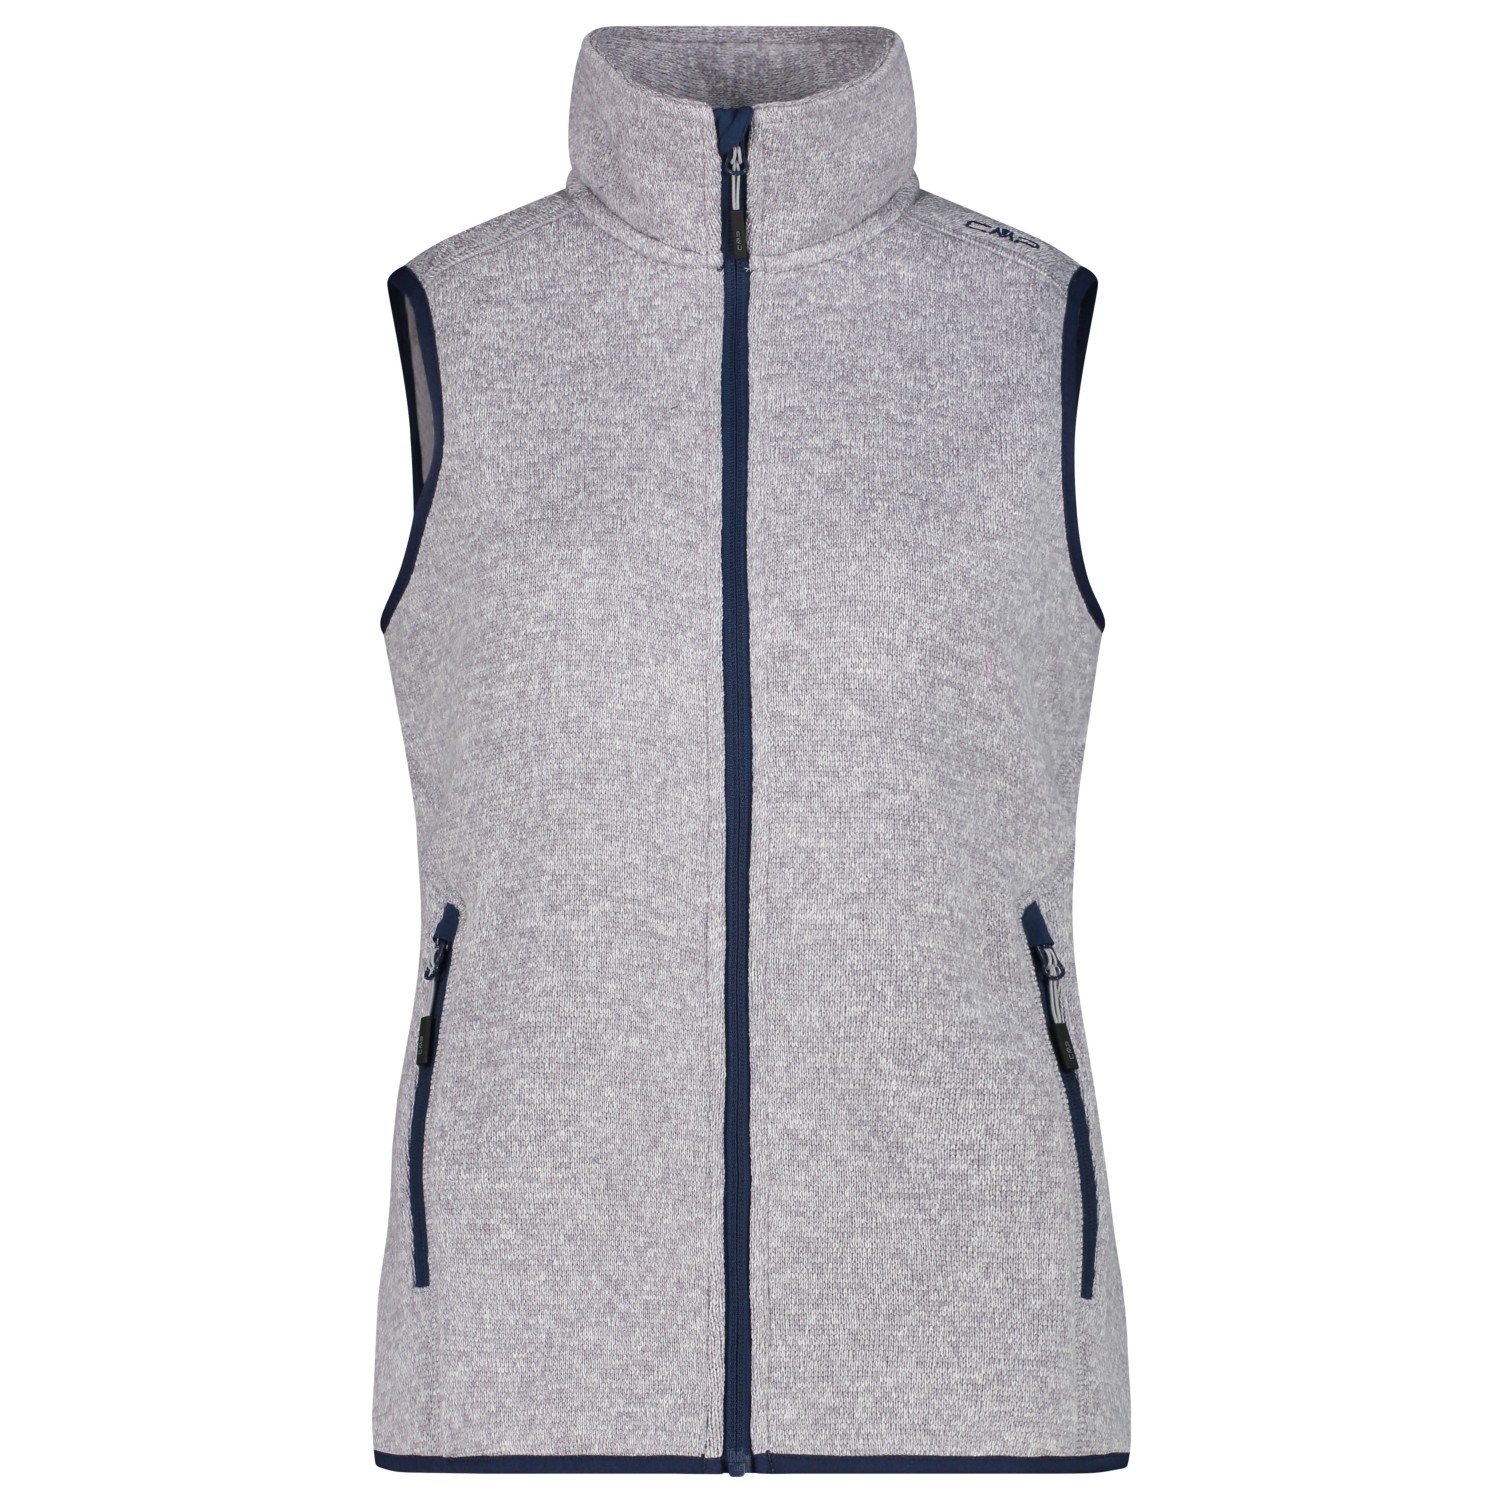 Флисовый жилет Cmp Women's Vest Jacquard Knitted, цвет Argento/Blue